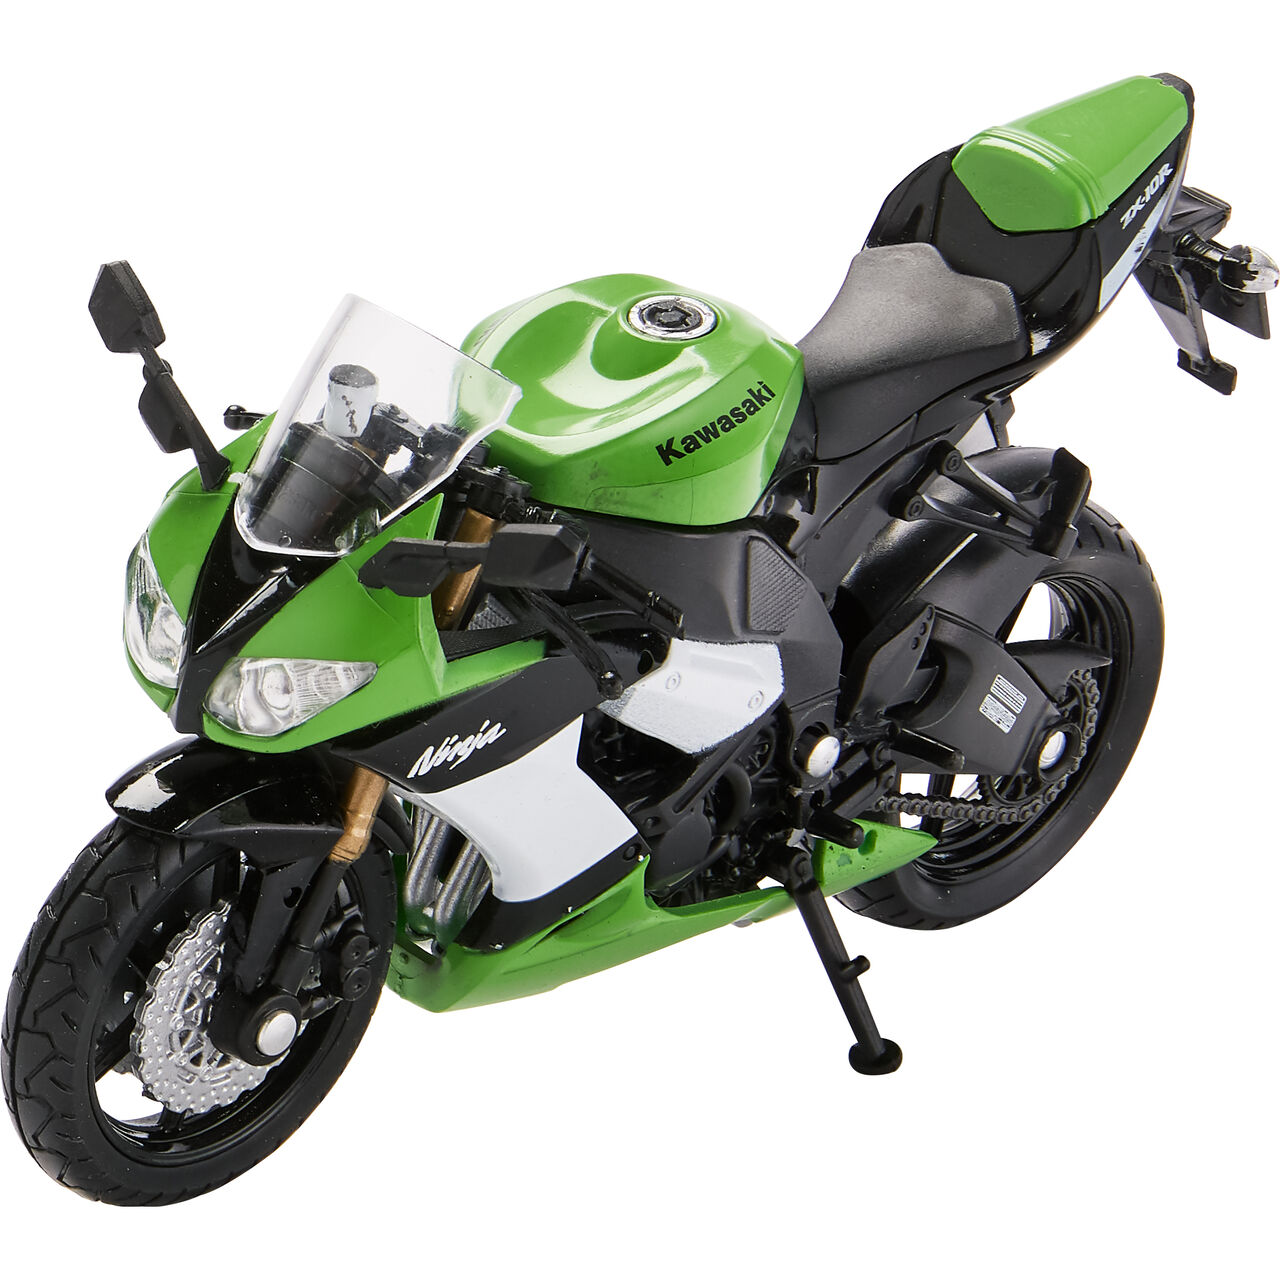 motorcycle model 1:18 Kawasaki ZX-10 R Ninja 2008-2010